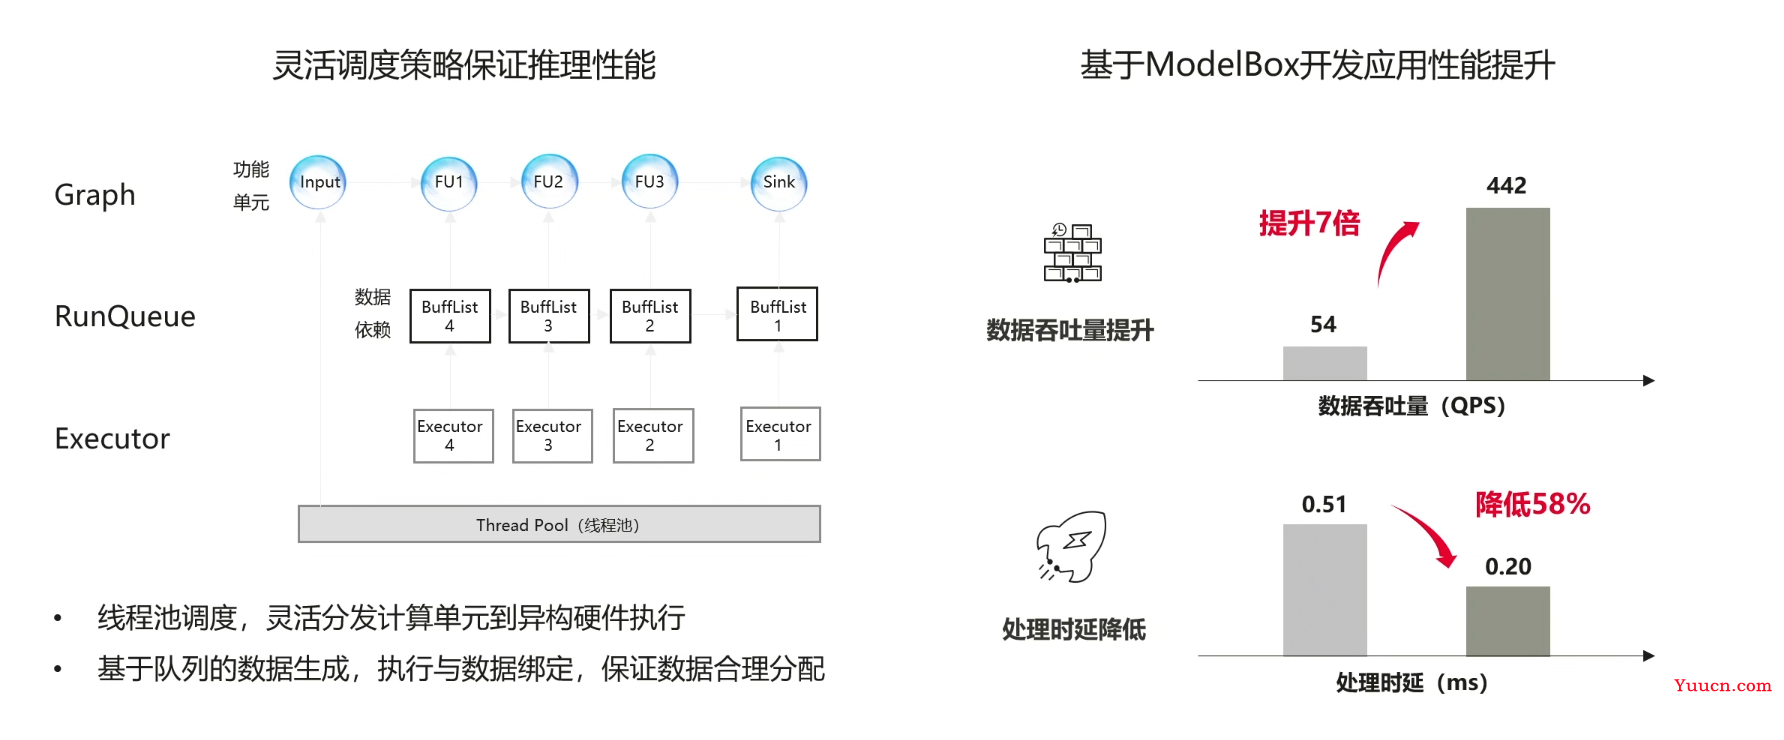 【愚公系列】华为云系列之基于ModelBox搭建的AI寻车系统